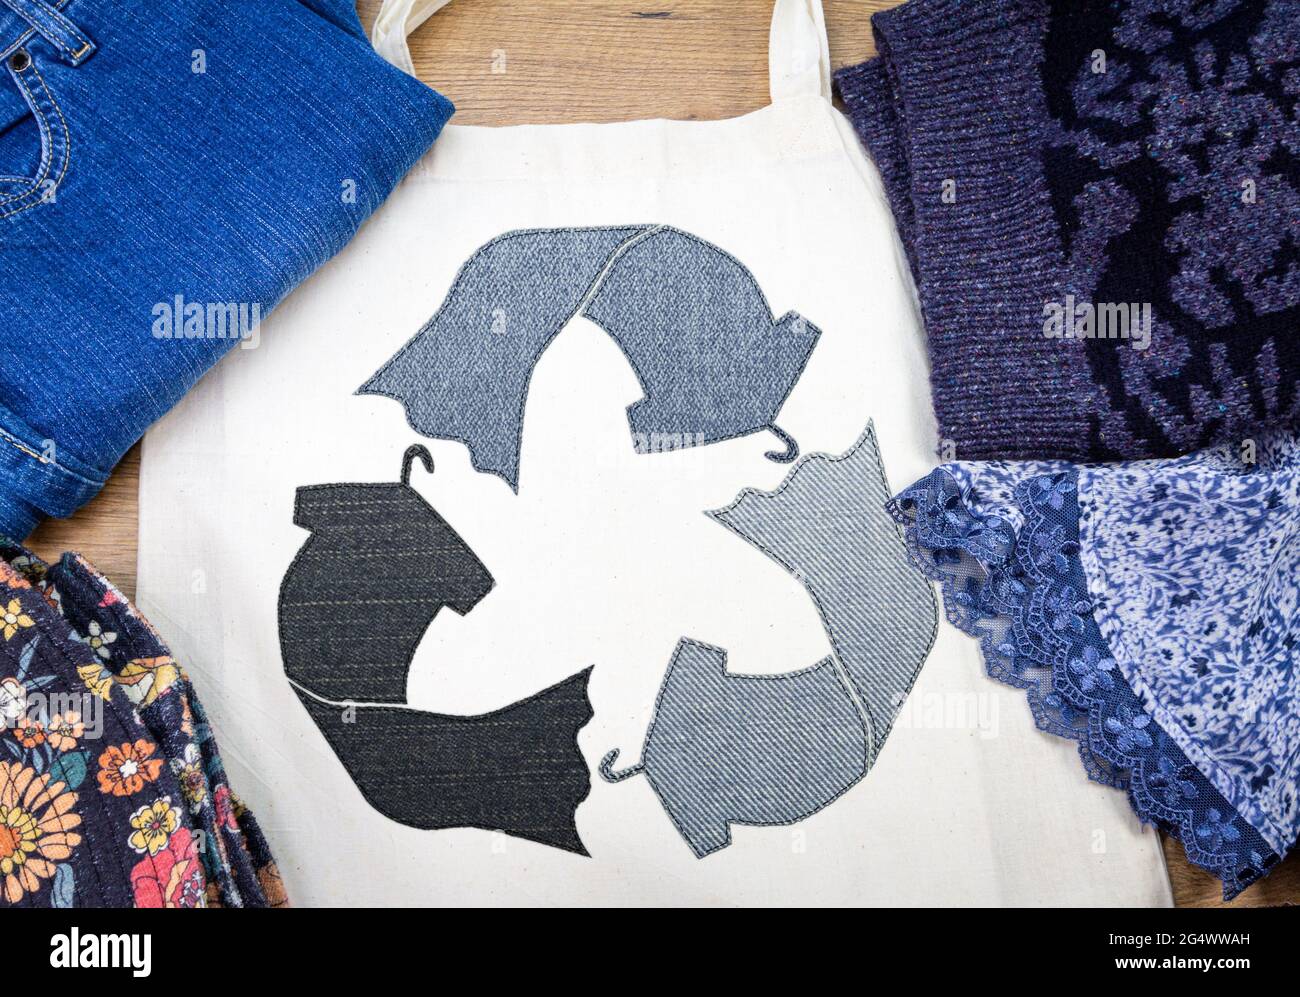 simbolo del tessuto riciclato sulla borsa riutilizzabile in tessuto circondata da una vista dall'alto, moda sostenibile Foto Stock